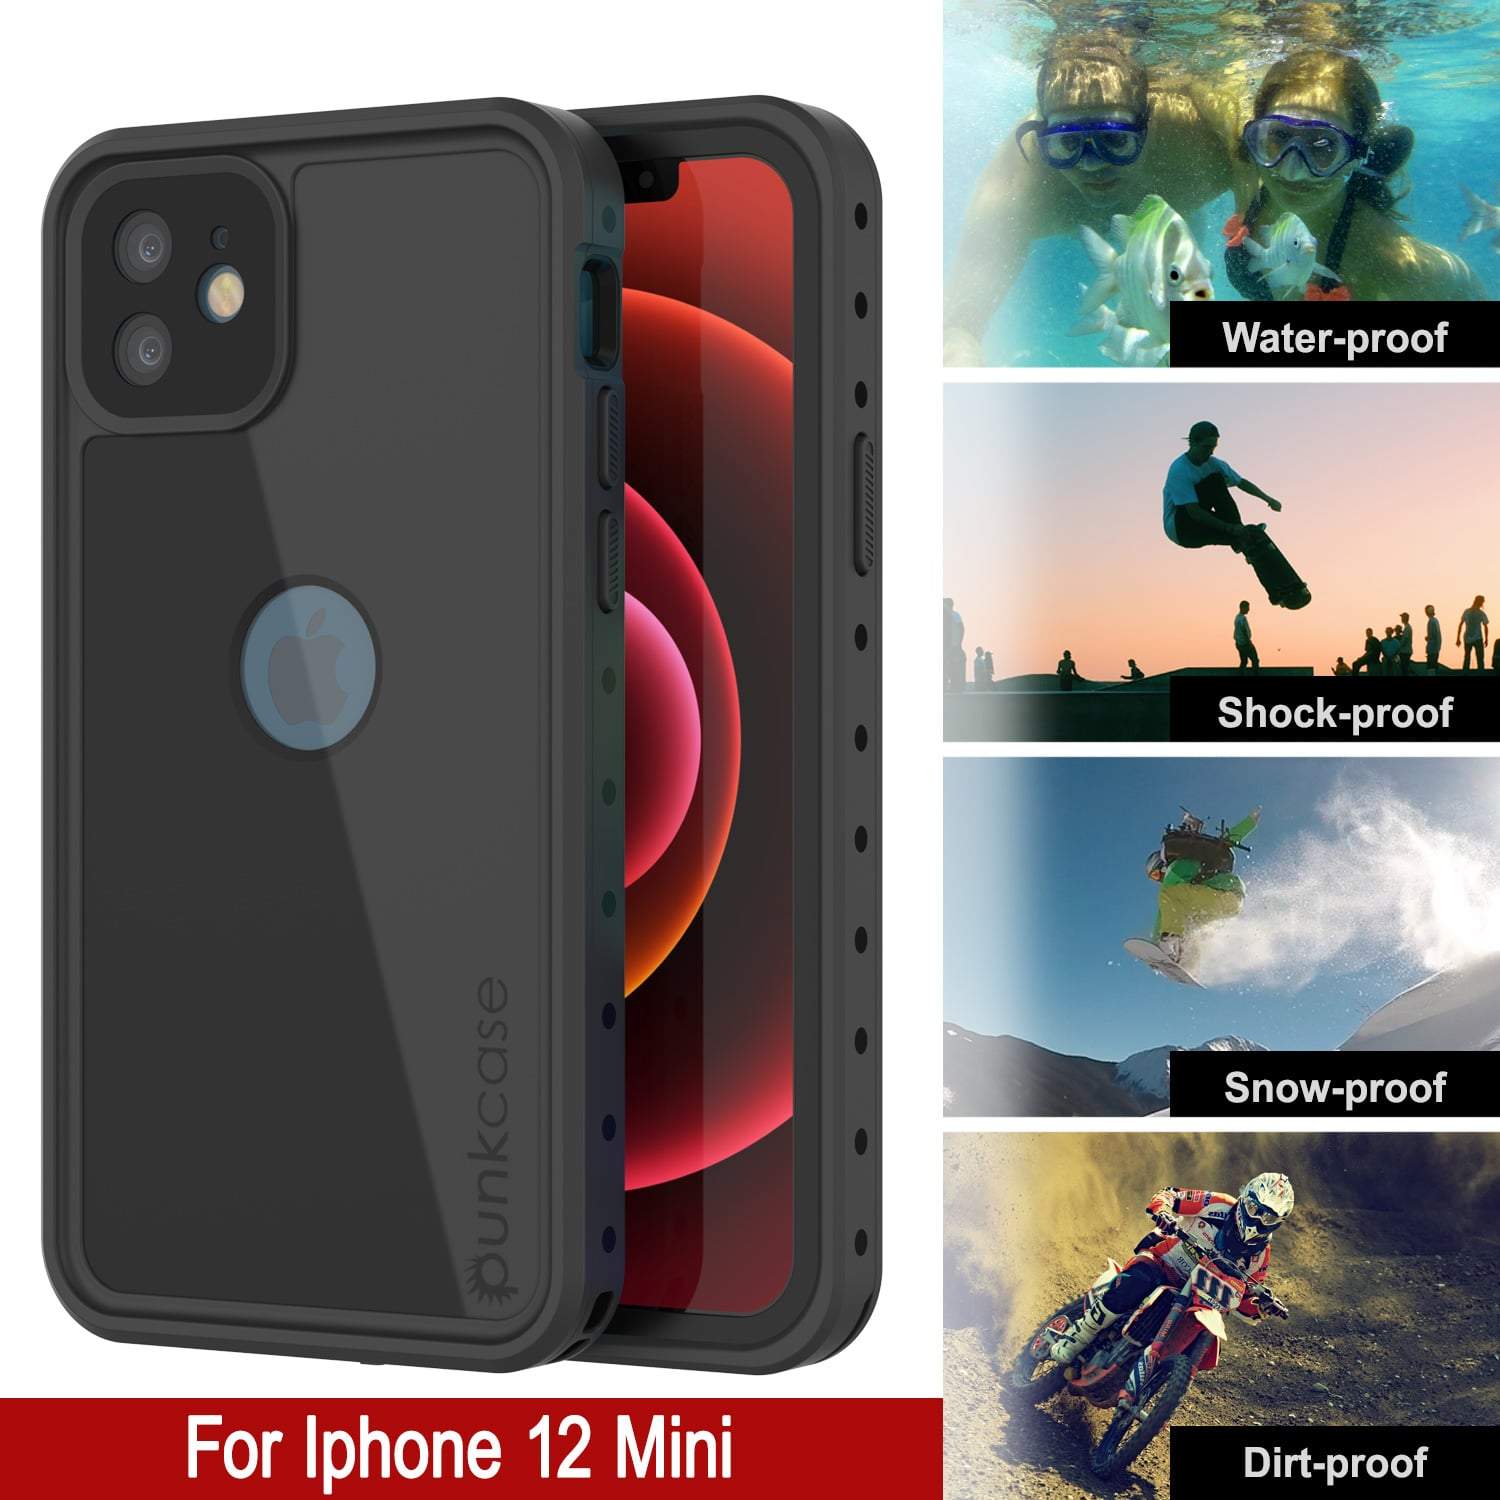 iPhone 12 Mini Waterproof IP68 Case, Punkcase [Black] [StudStar Series] [Slim Fit]